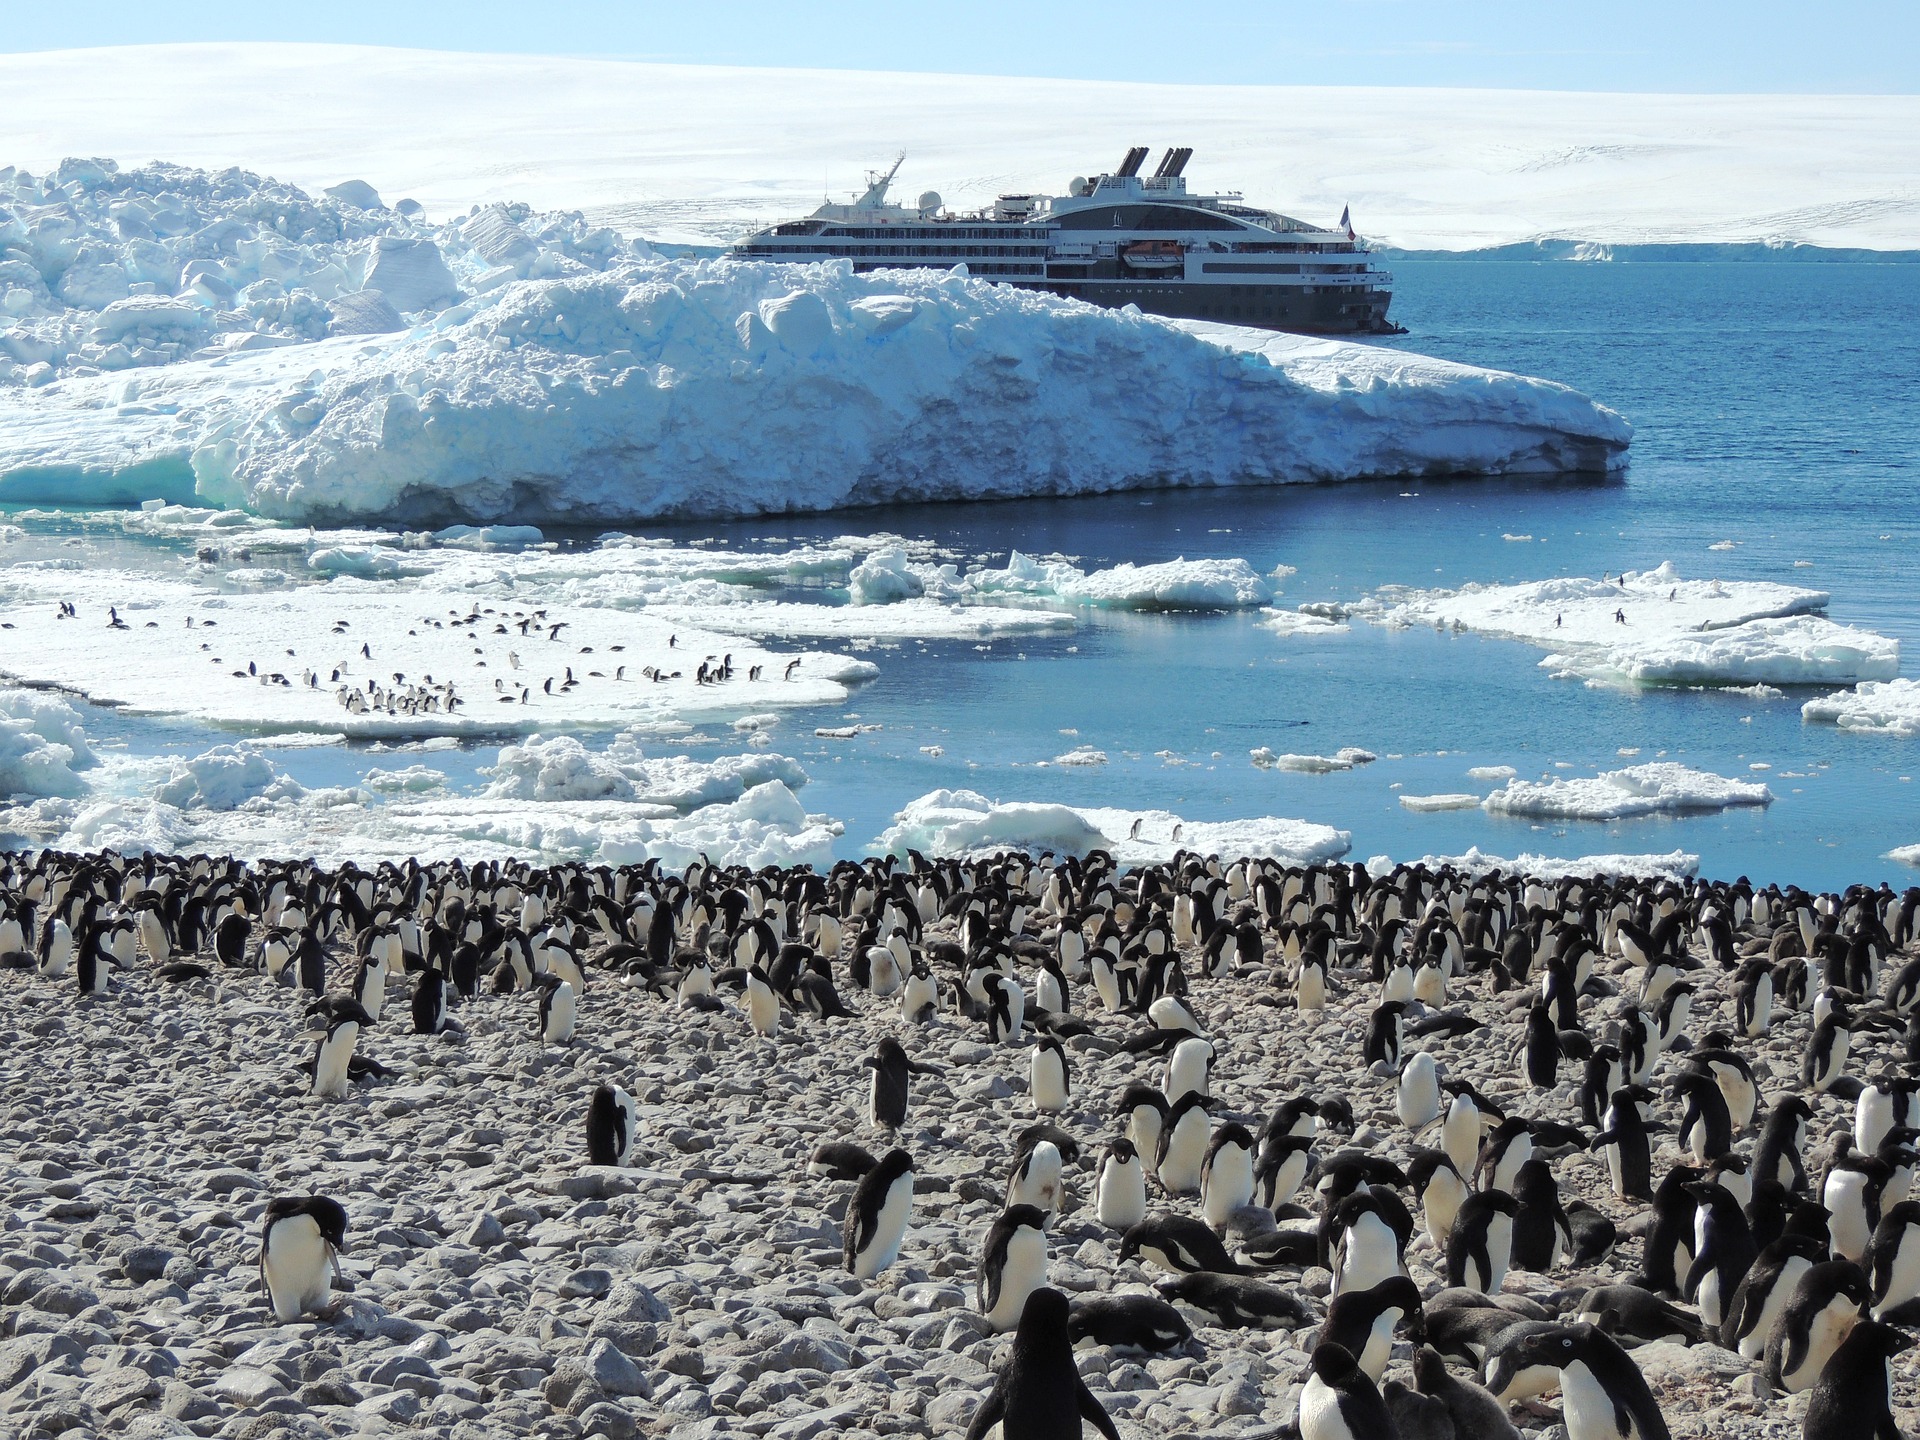 Население Антарктиды. Tcnm KB gbyiudnys d fynfhrnblt. Поднимать пингвинов в антарктиде вакансии